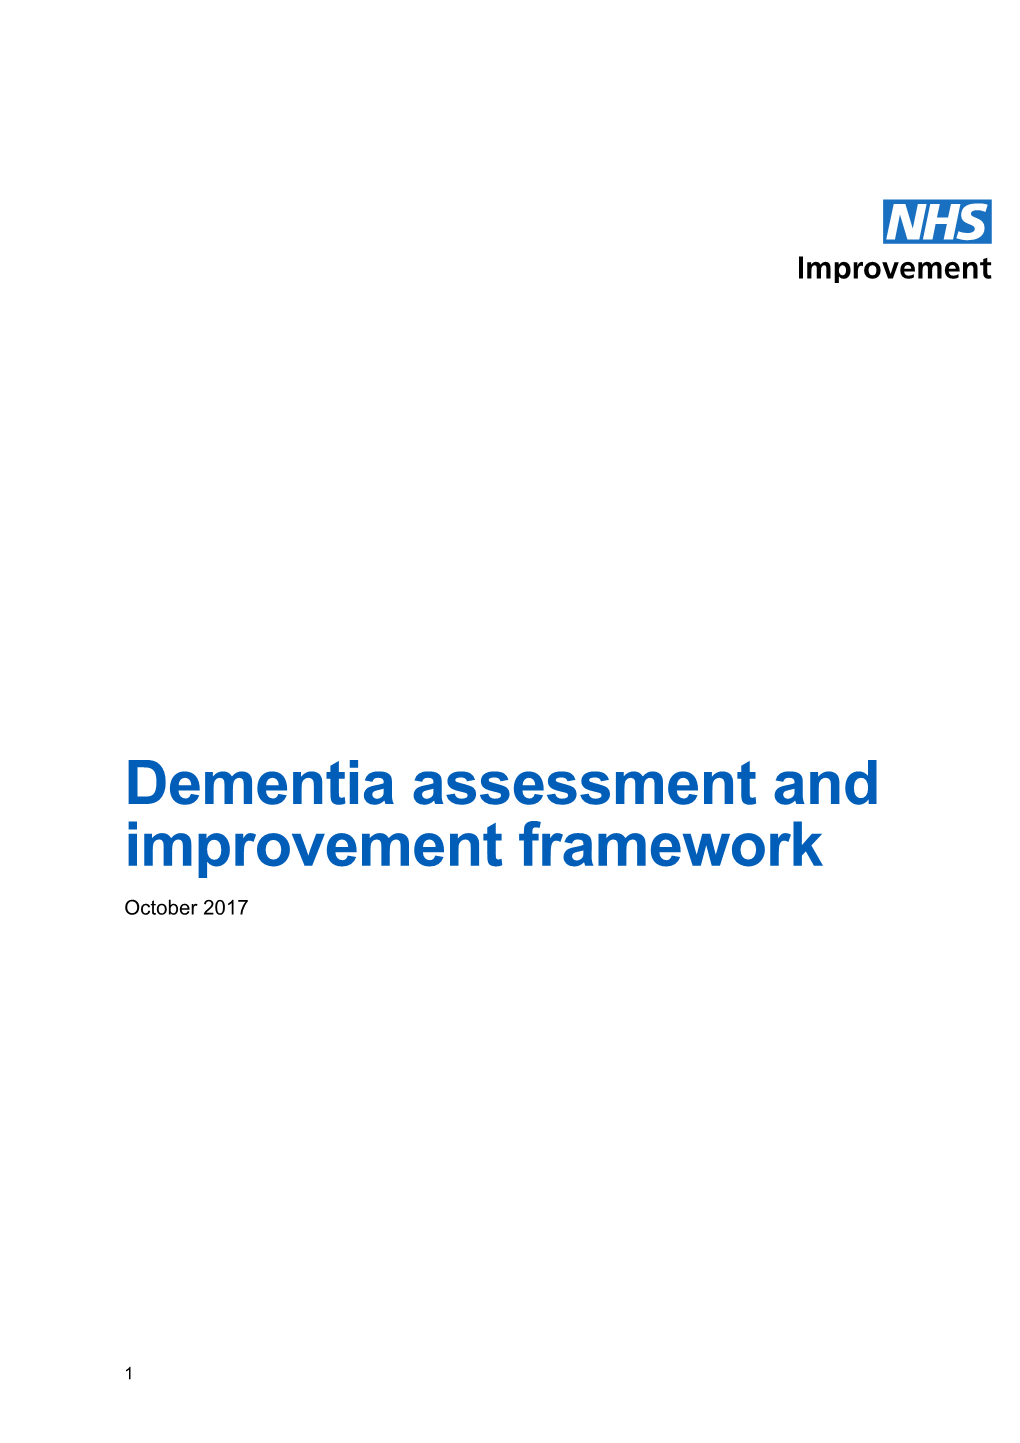 Dementia Assessment and Improvement Framework